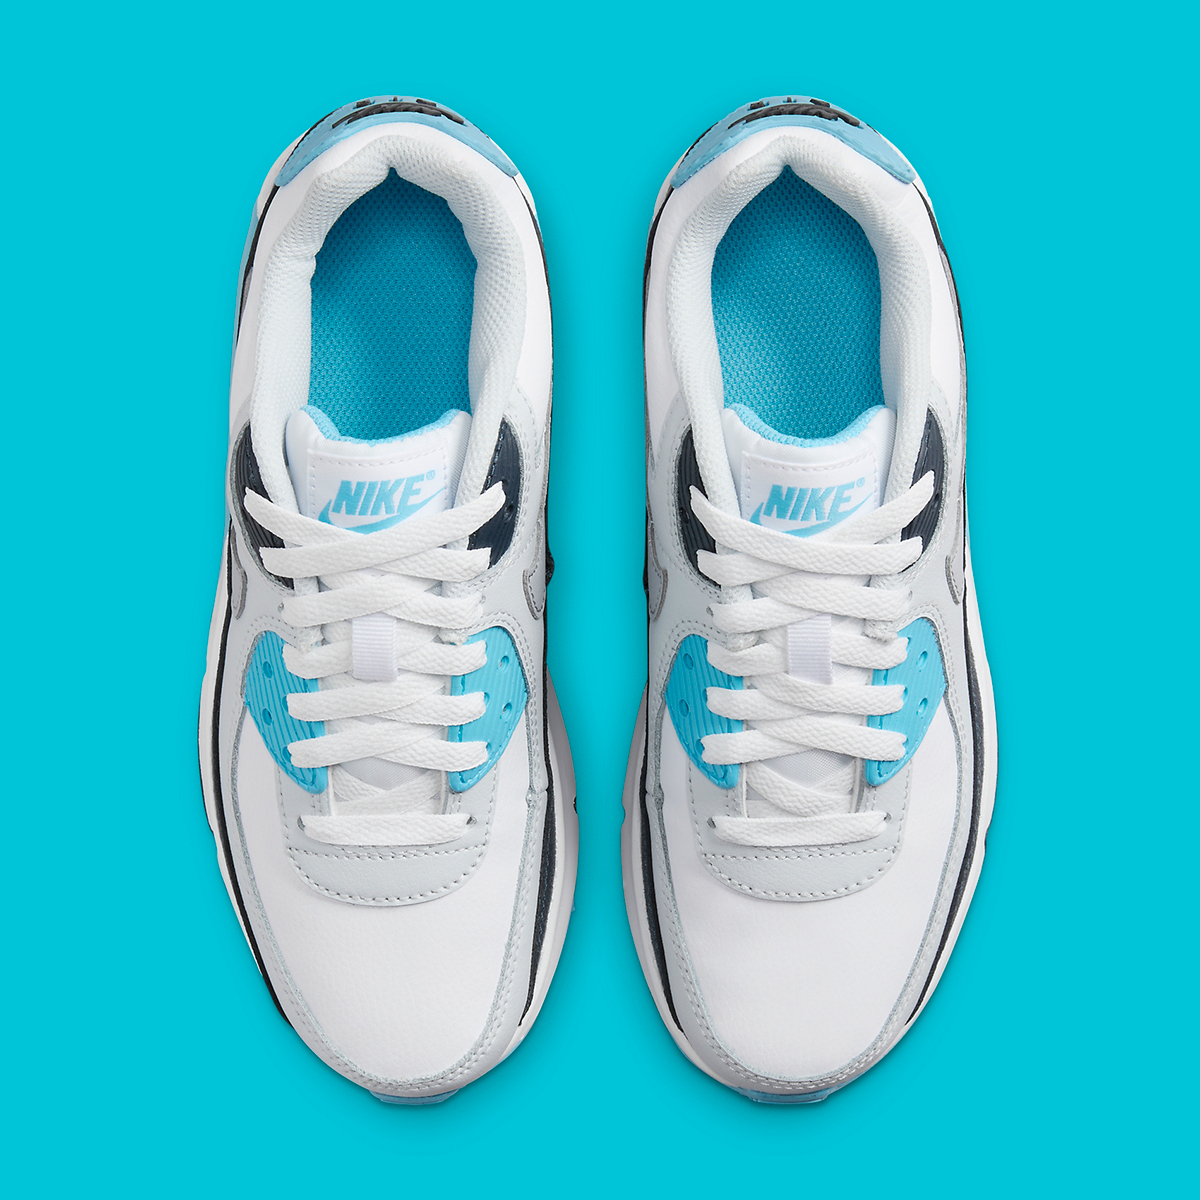 Nike retro 11 low on feet Gs White Aquarius Blue Hf6358 100 2